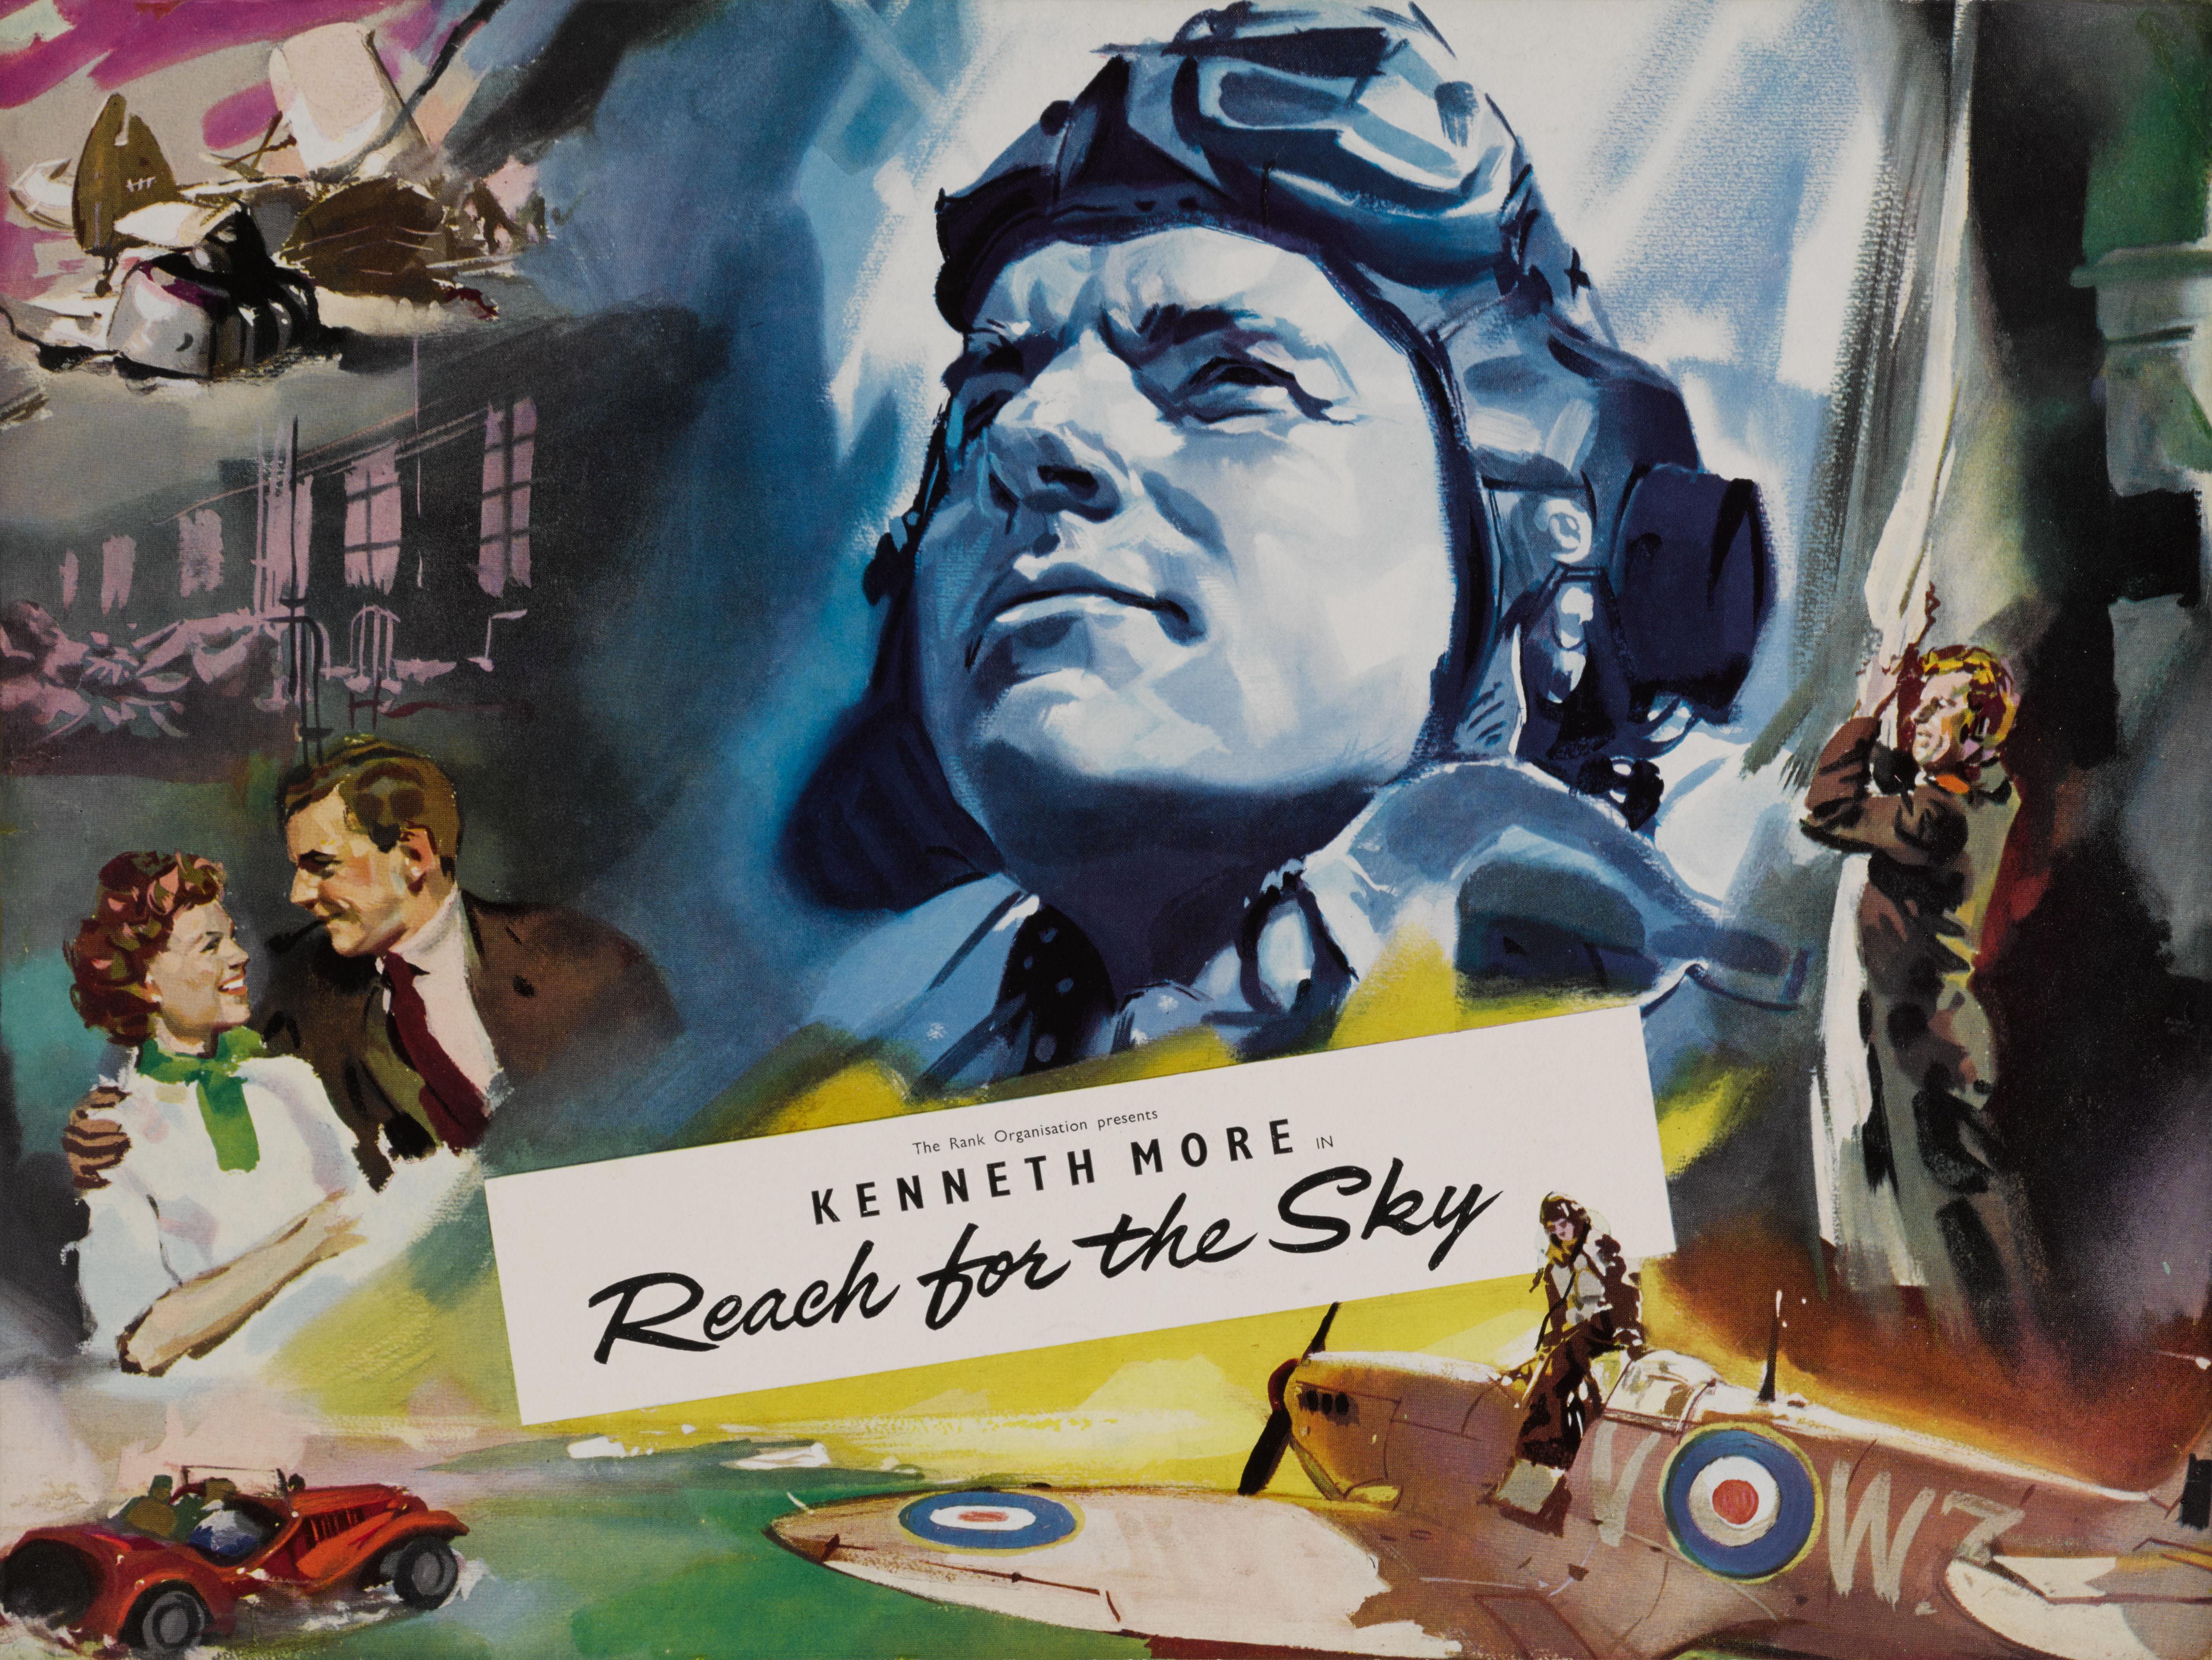 Synoptiques couleur britanniques originaux pour le film Reach for the Sky, 1956
Ce film est un biopic sur le capitaine de groupe de la RAF Douglas Bader qui, après avoir perdu ses deux jambes dans un accident d'acrobatie aérienne, a piloté un avion